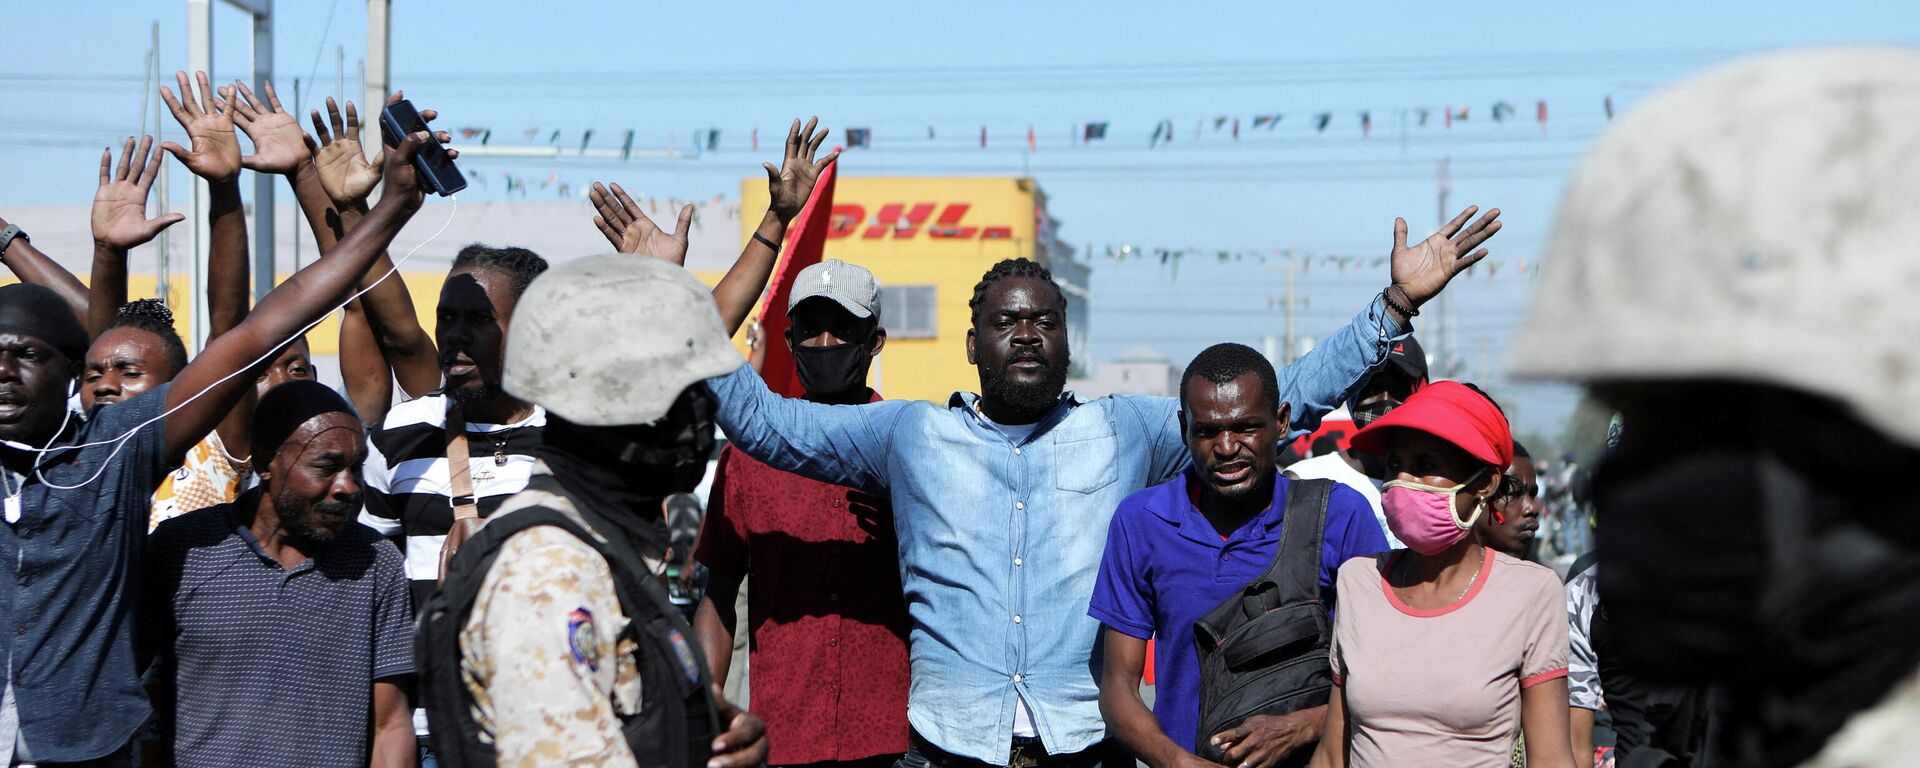 Protesta de empleados del sector textil en Haití - Sputnik Mundo, 1920, 04.03.2022